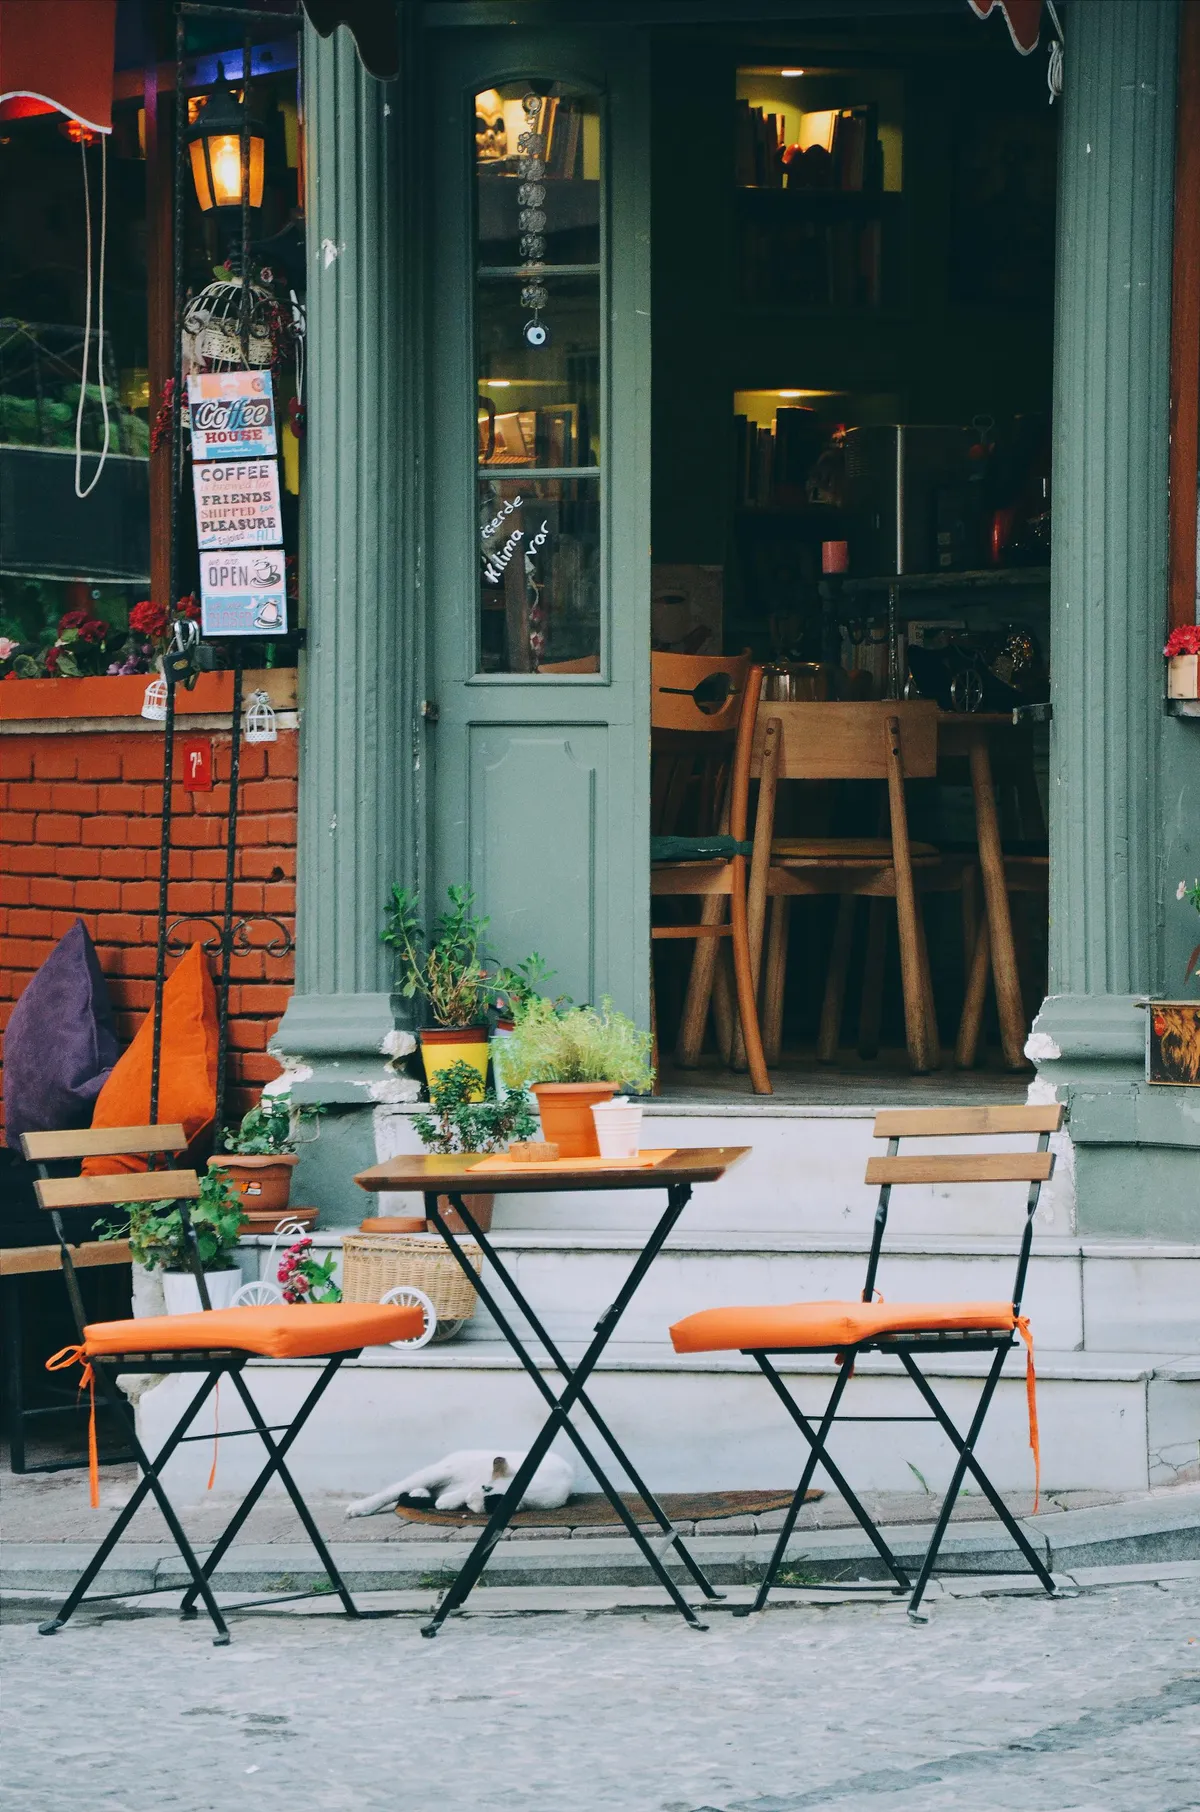 Un juego de patio de tres piezas marrón y naranja en el exterior de una cafetería | Fuente: Pexels